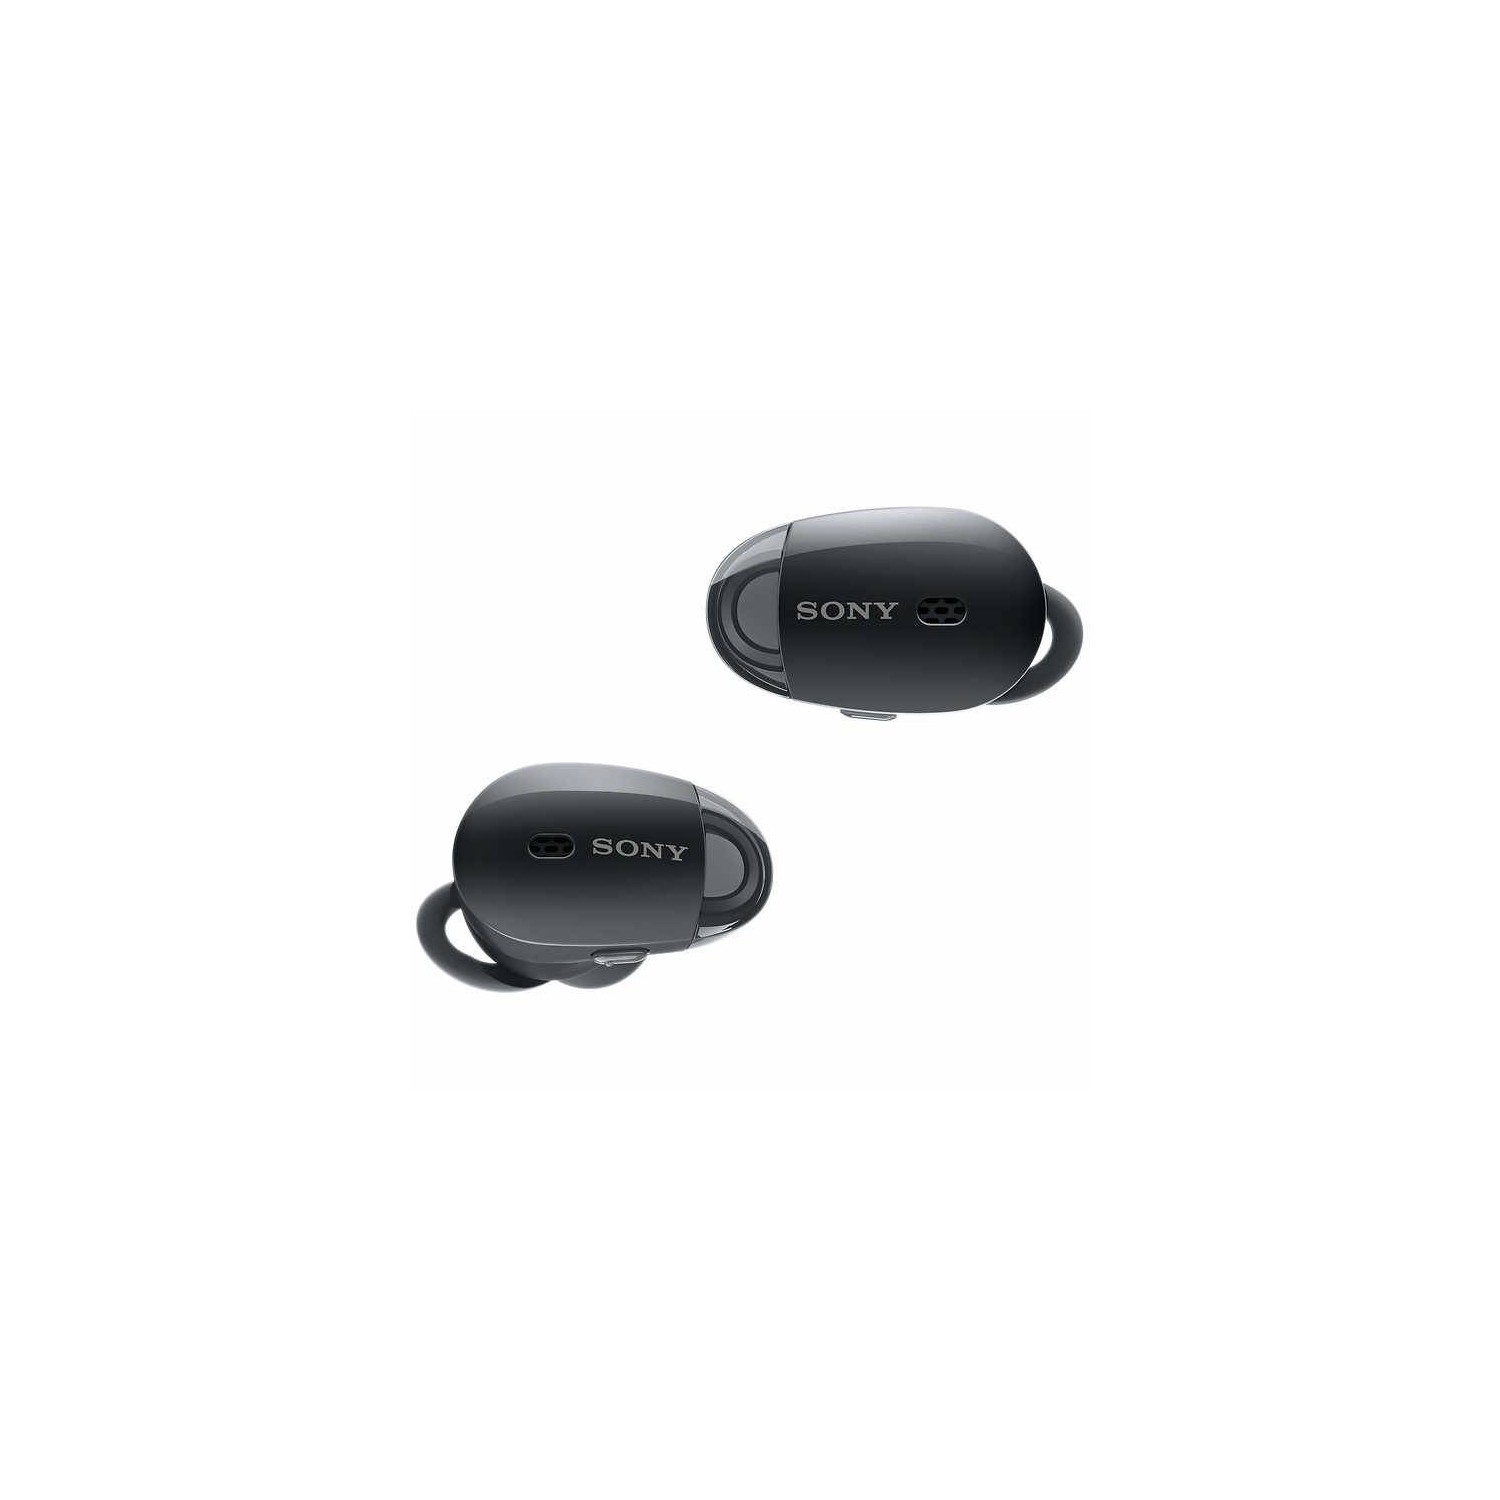 Sony WF-1000X True Wireless In-Ear Noise Canceling Headphones / Black - Open Box